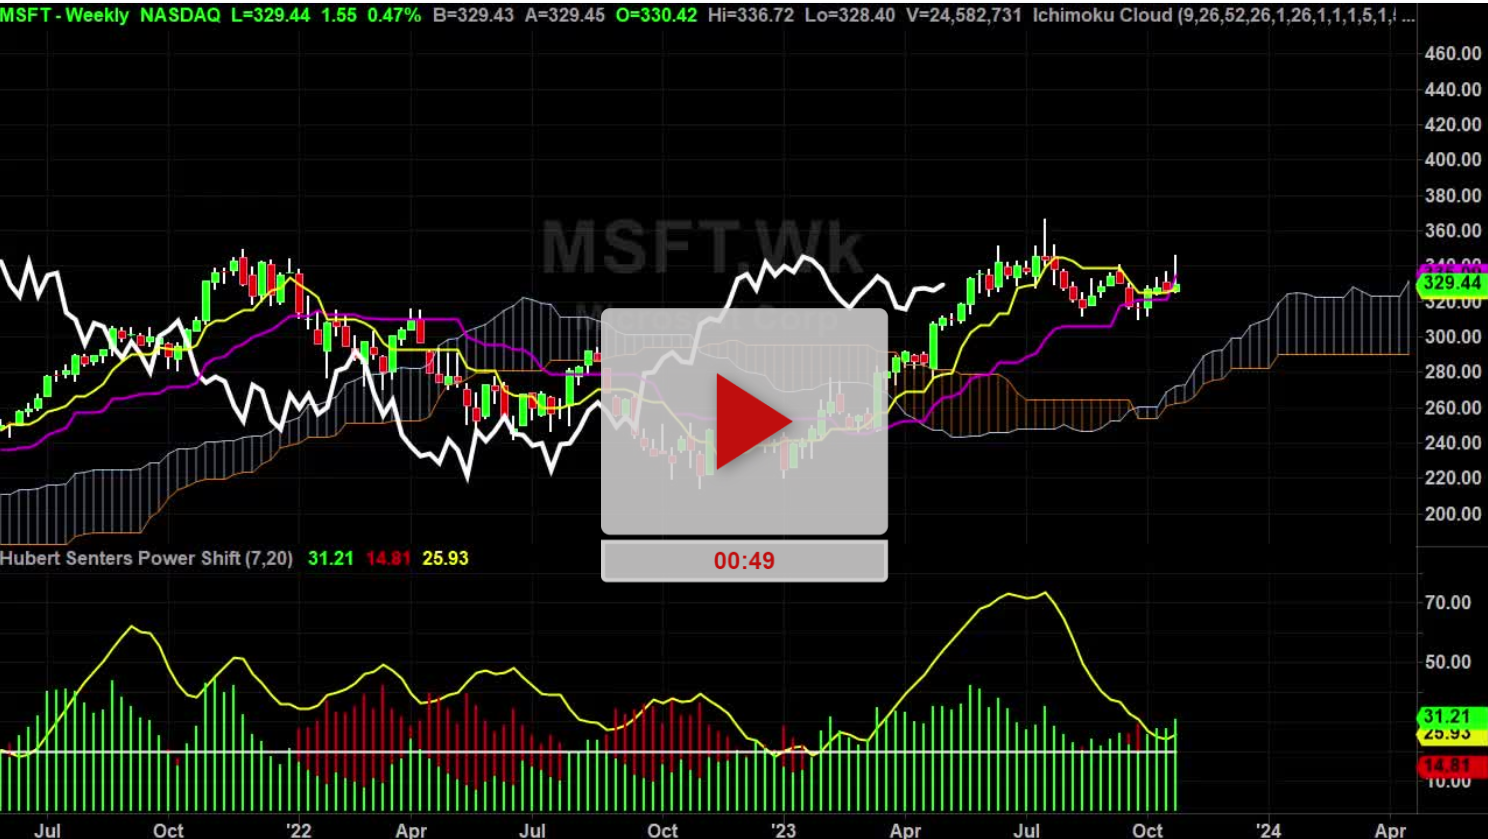 MSFT Stock Weekly Chart Analysis Part 1 - Hubert Senters